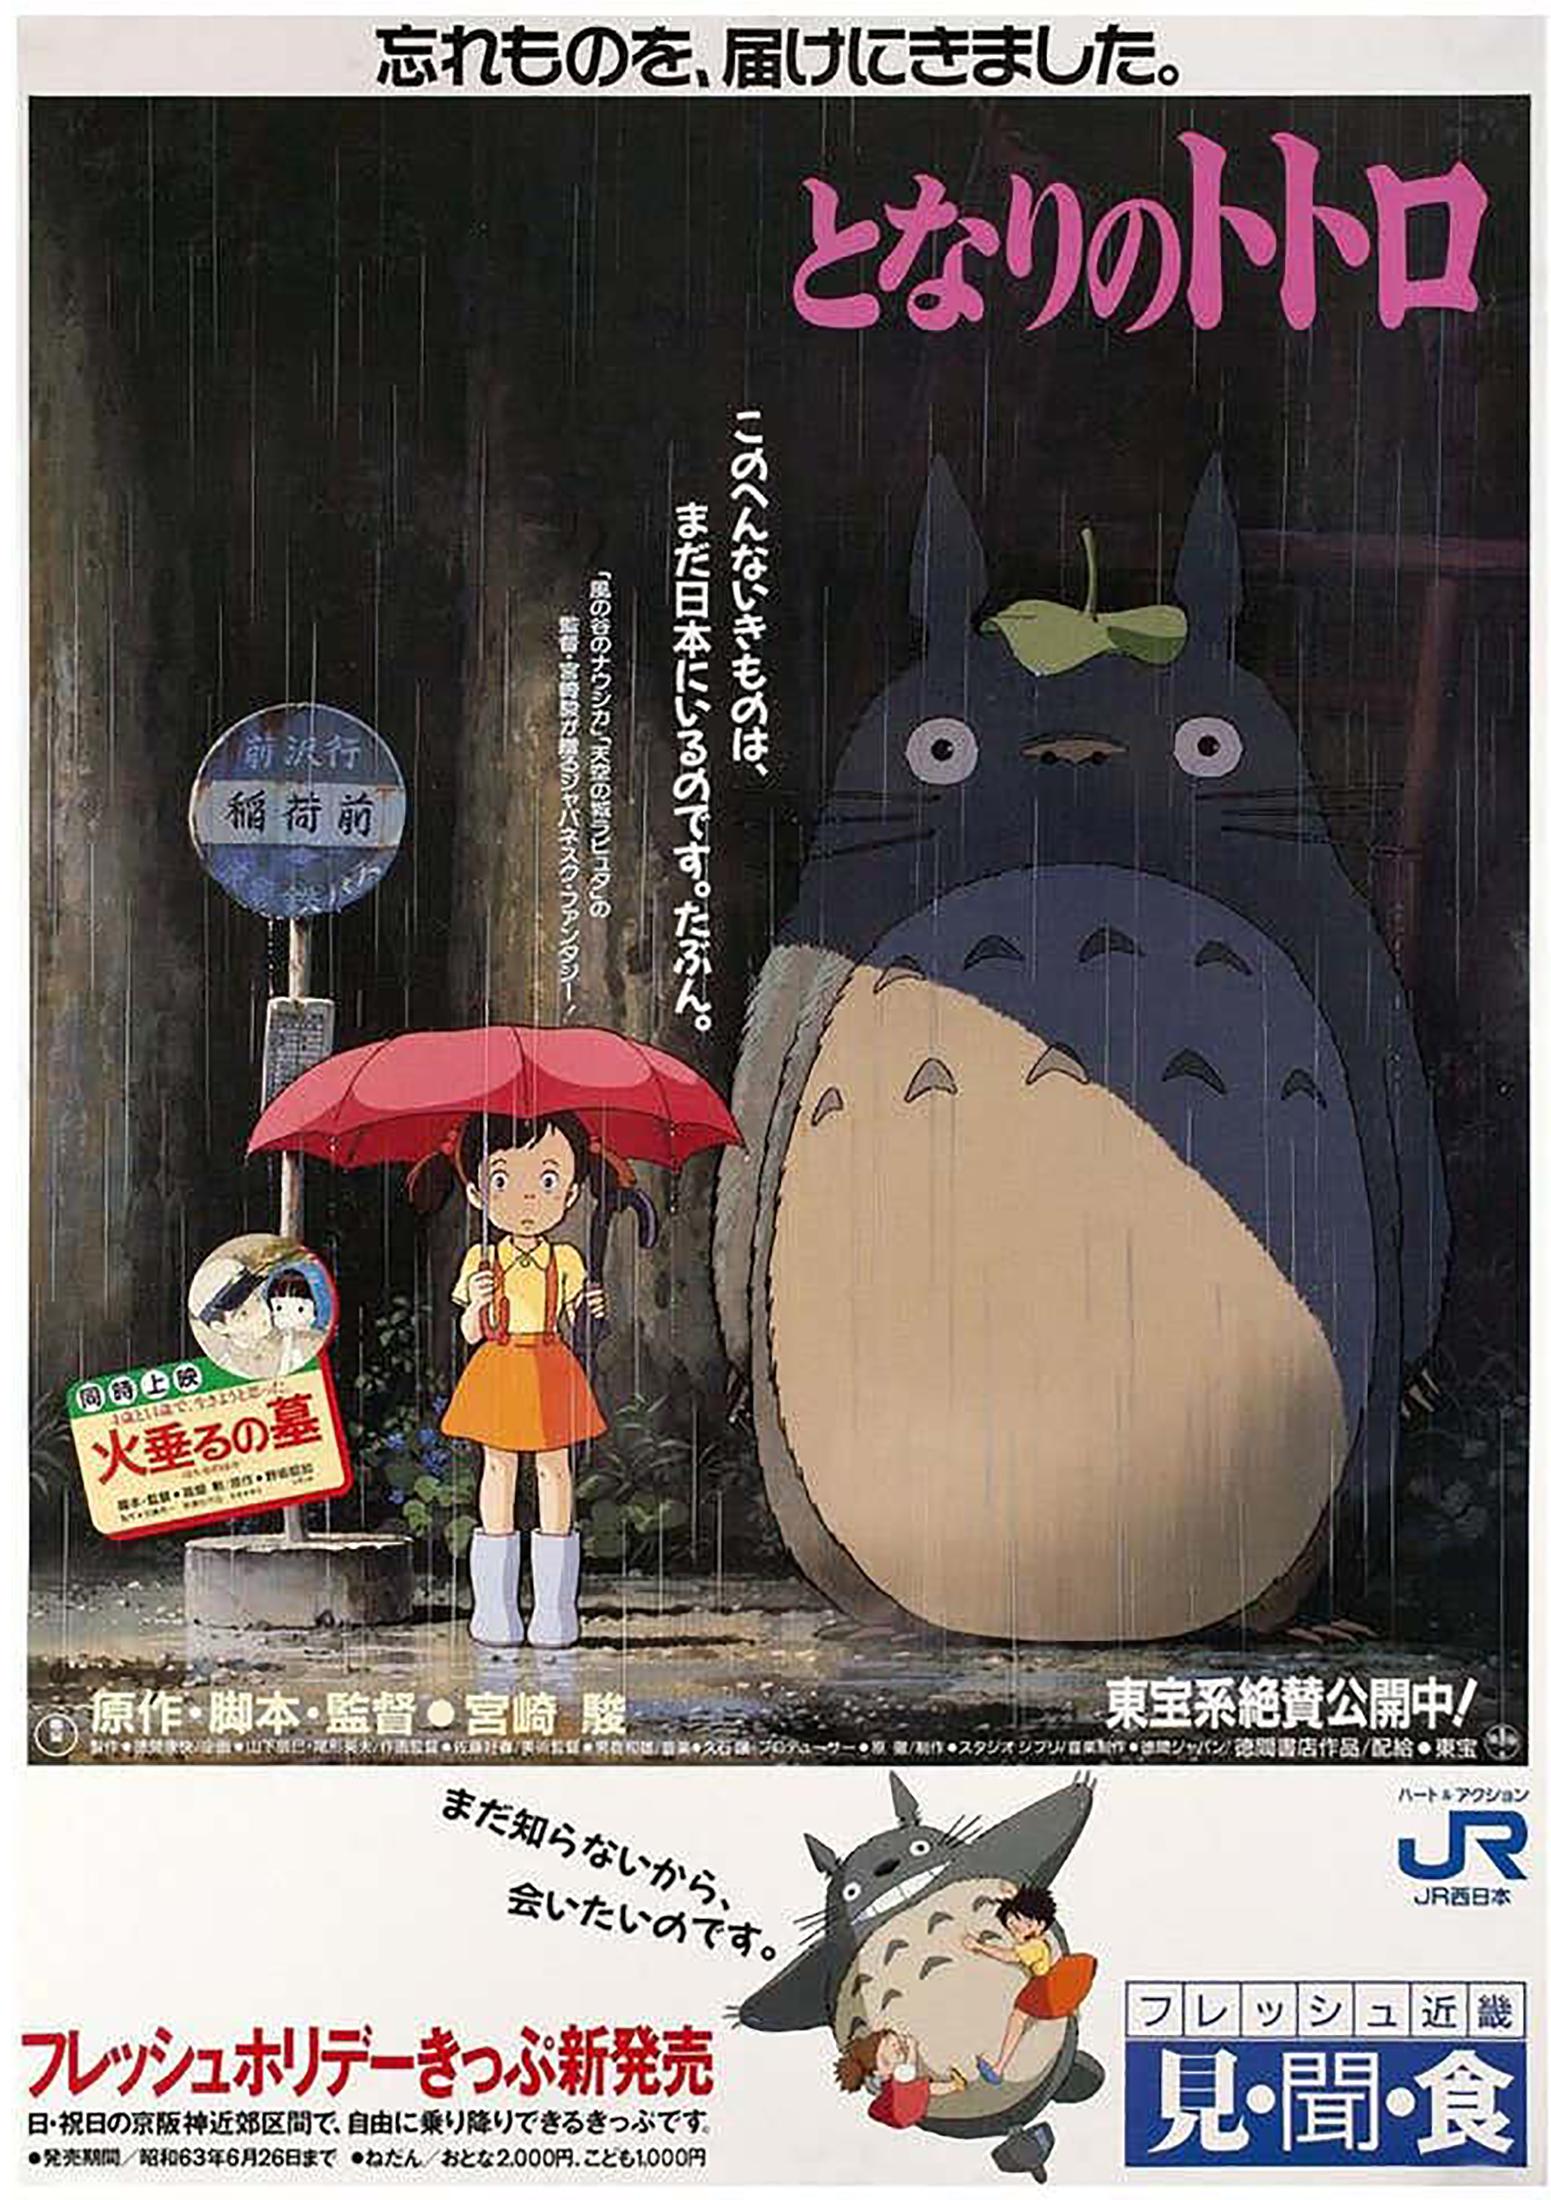 Unknown Print - My Neighbour Totoro Original Vintage Large Movie Poster, Japan Rail, Ghibli 1988